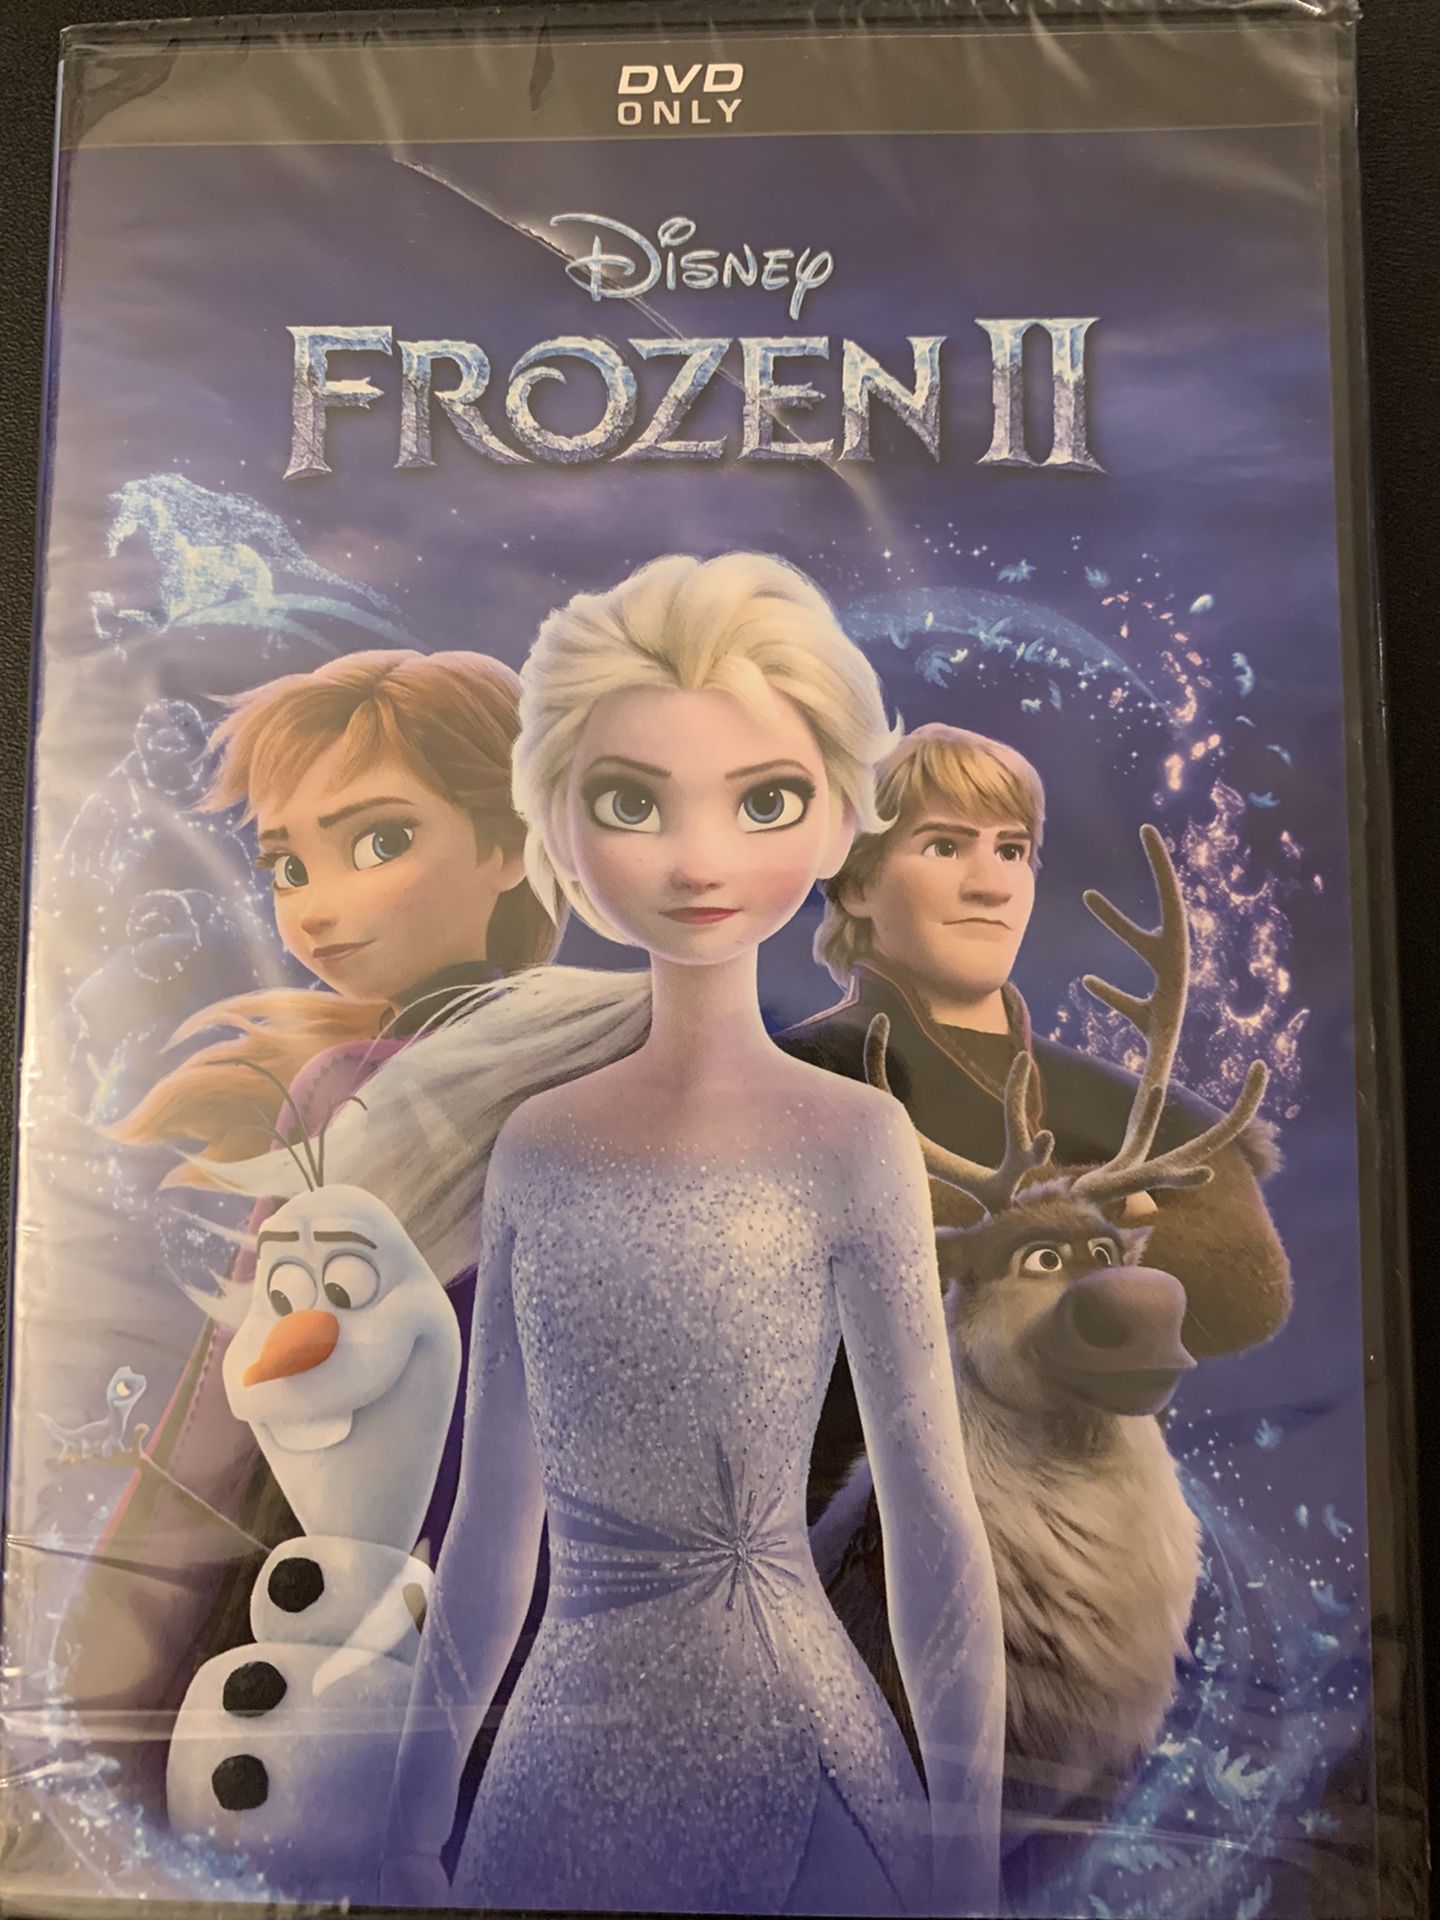 Disney’s FROZEN II (DVD) NEW!